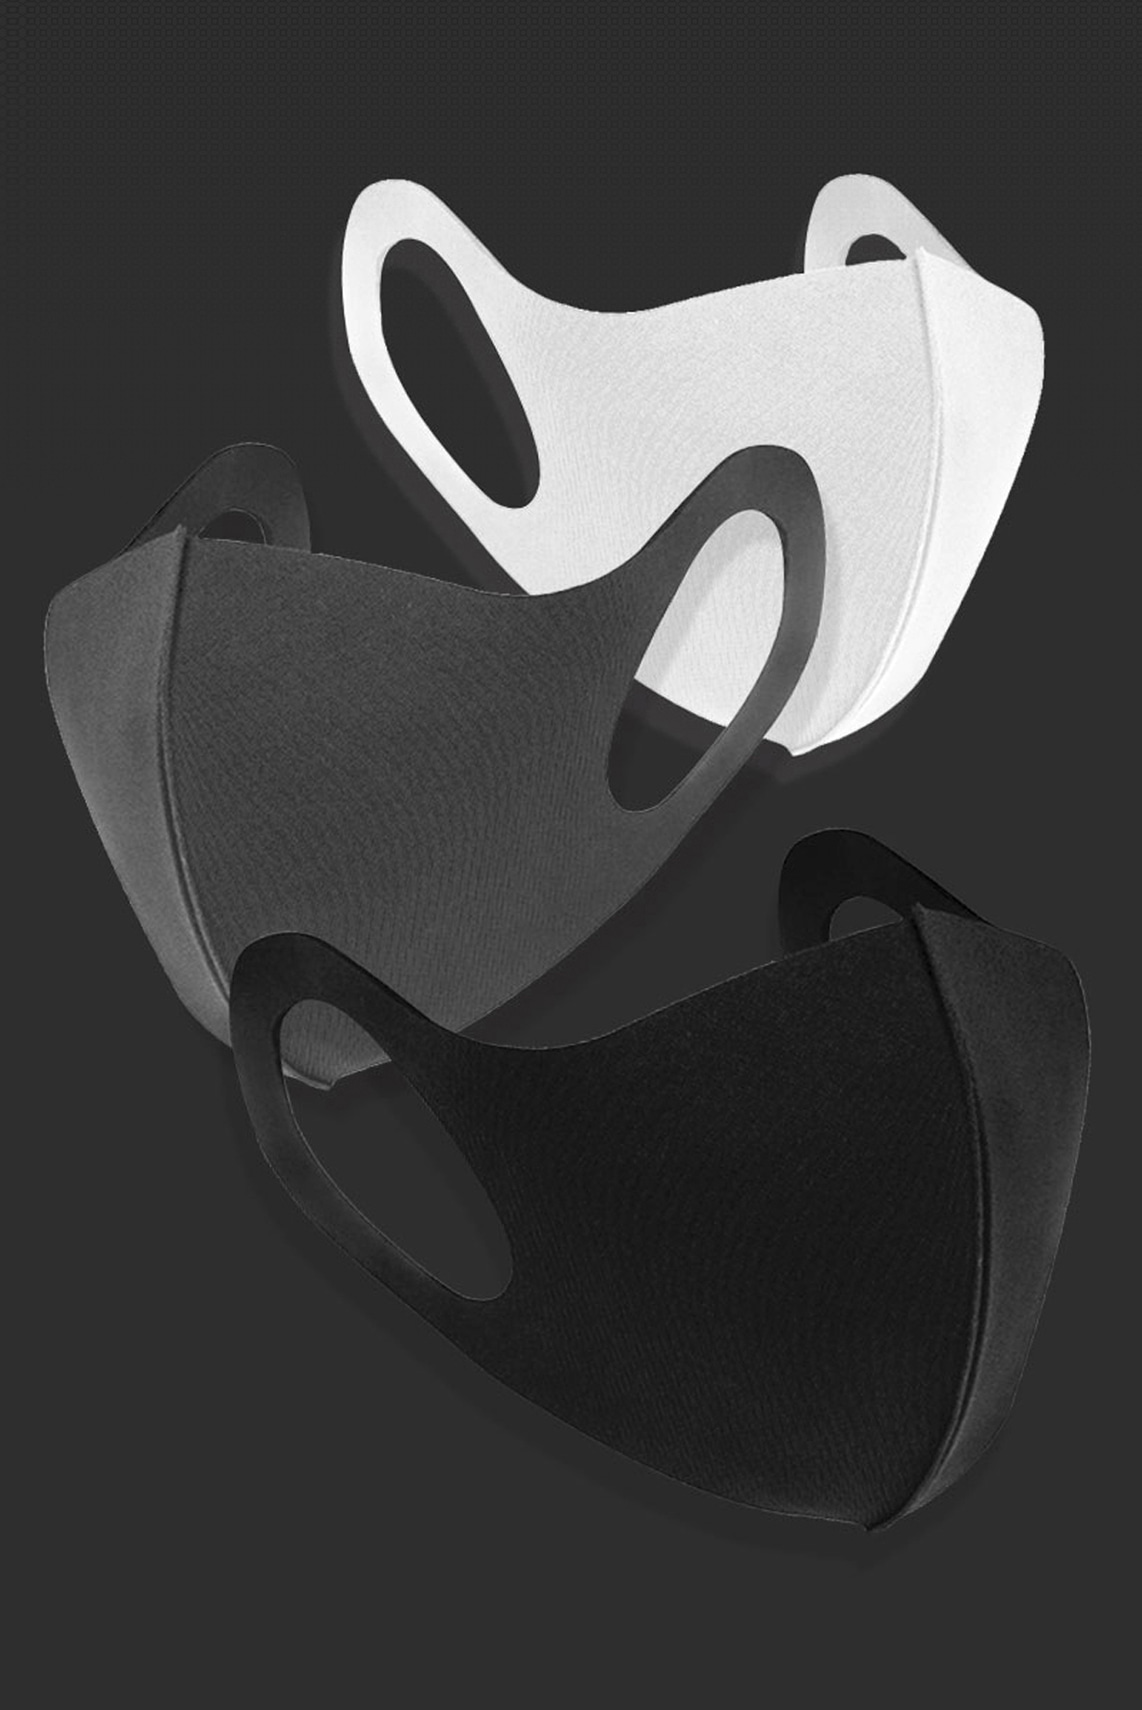 에센셜 기능성 3D 패션 마스크 (SEK품질인증마크 / 블랙)